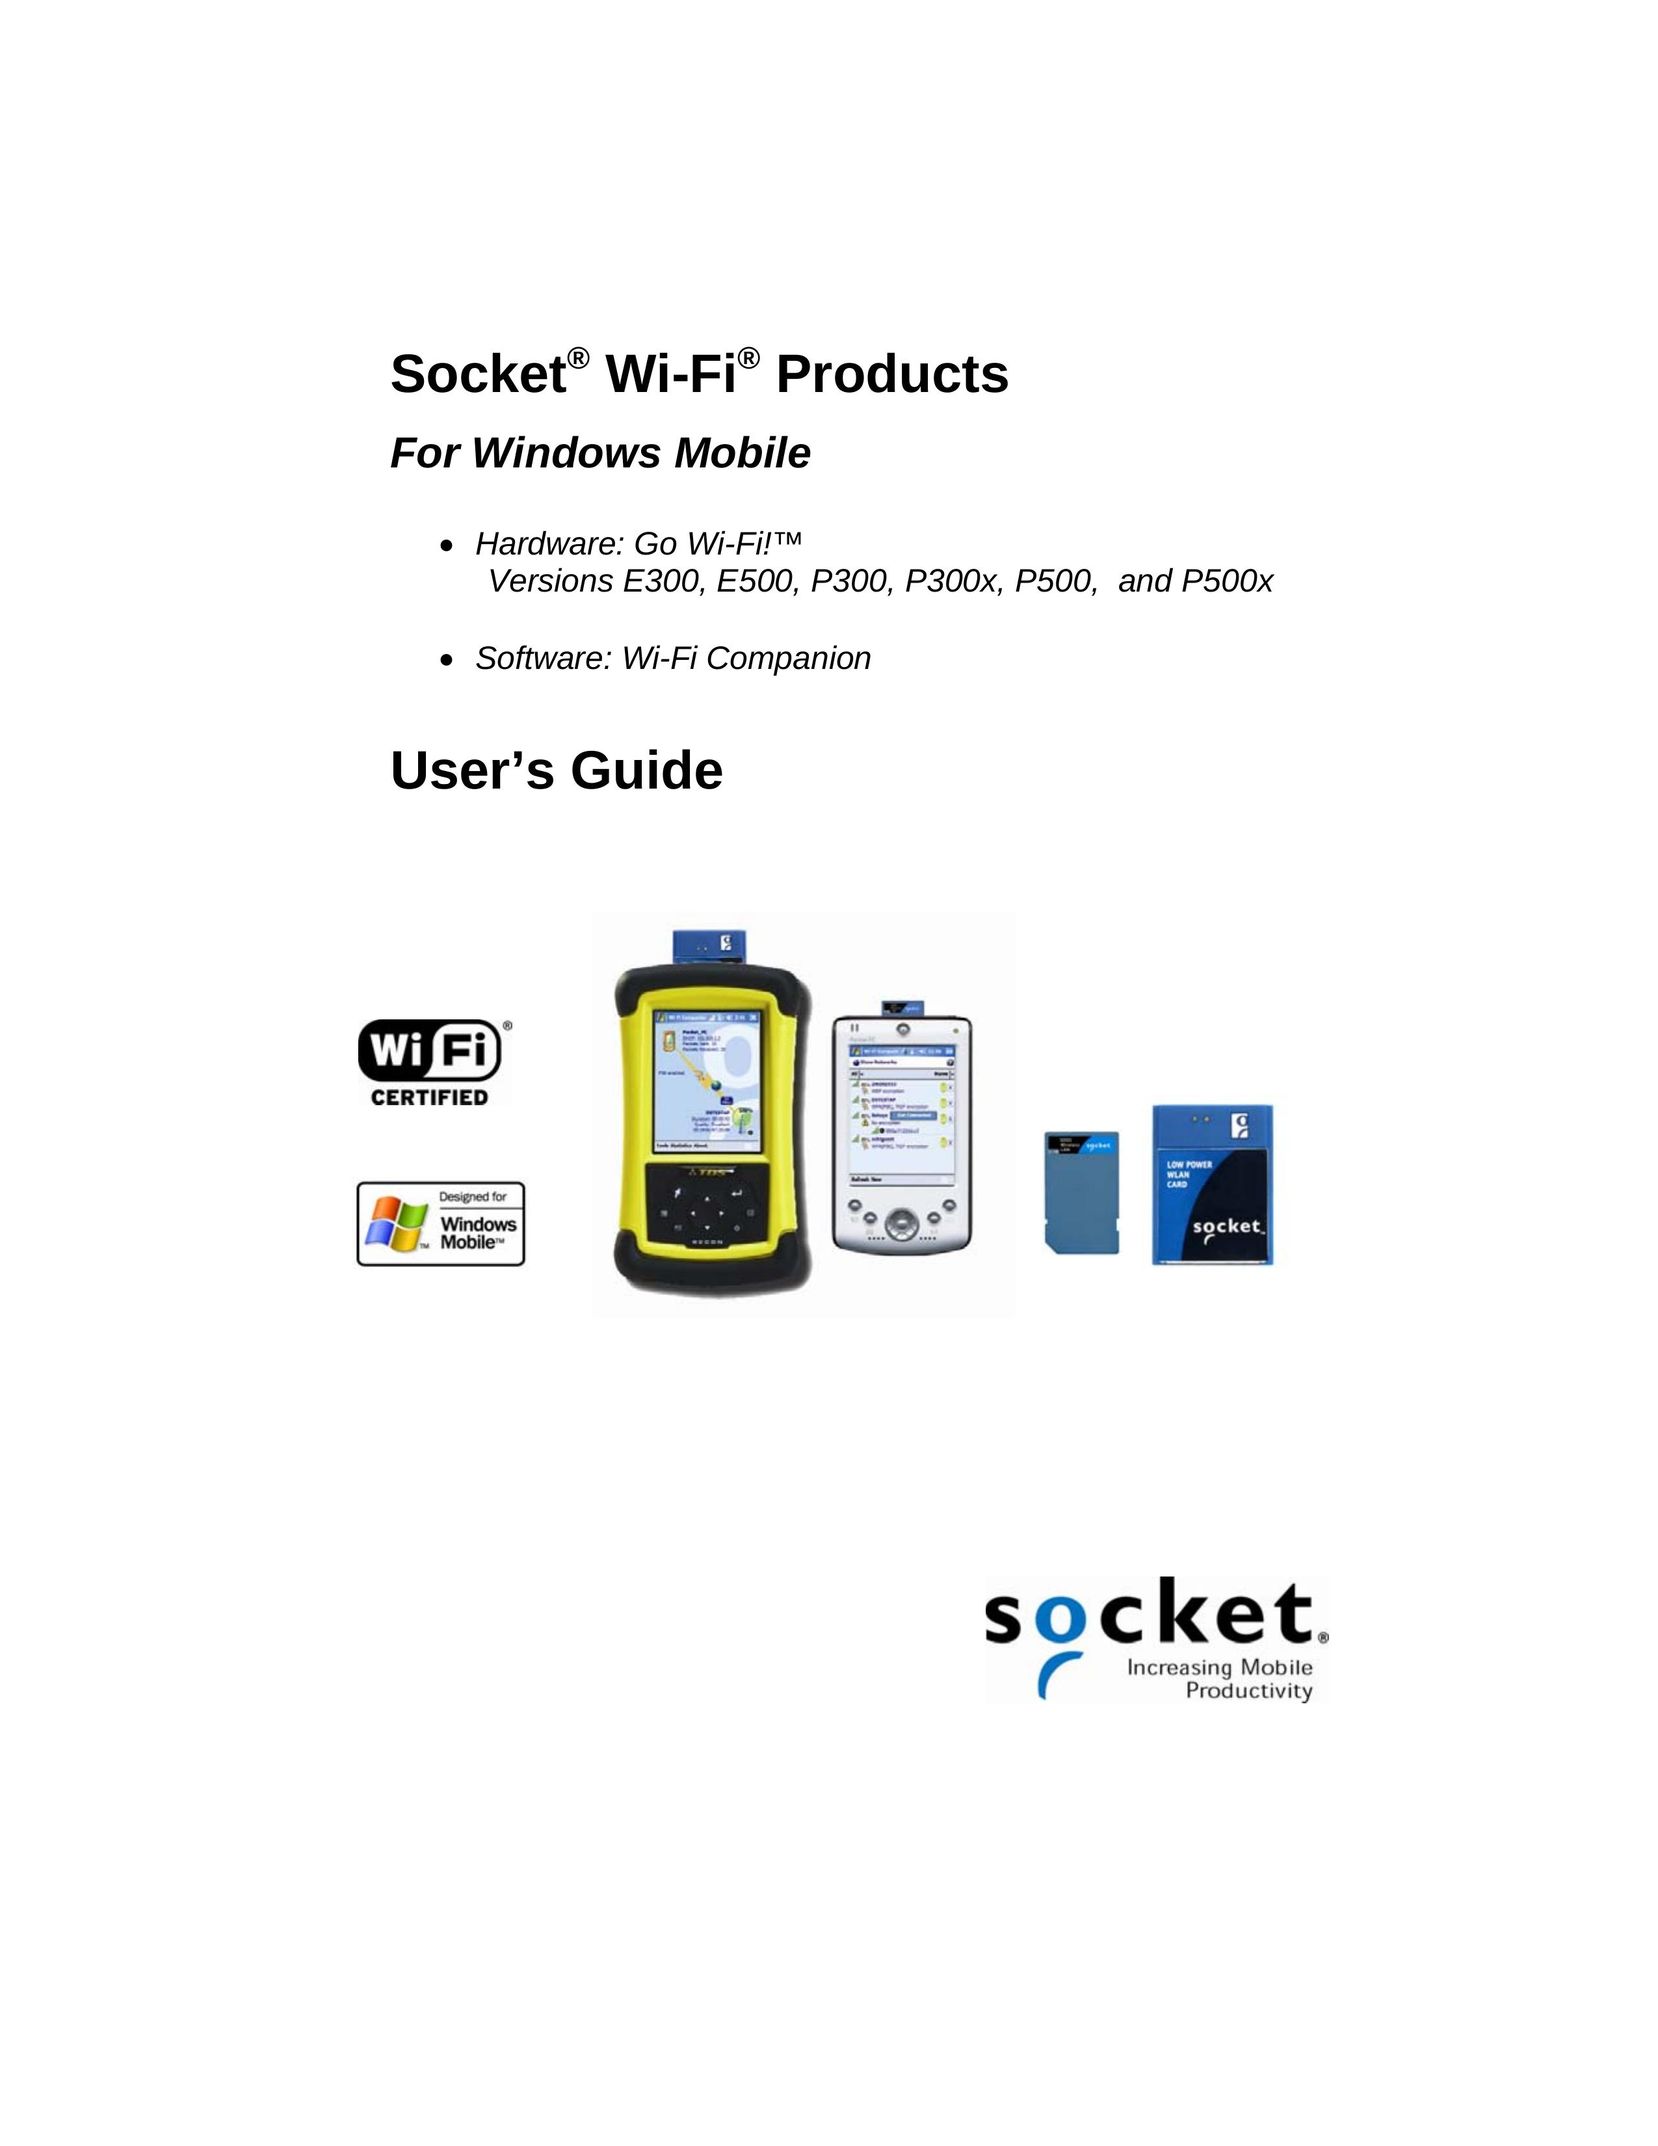 Socket Mobile E500 Network Card User Manual